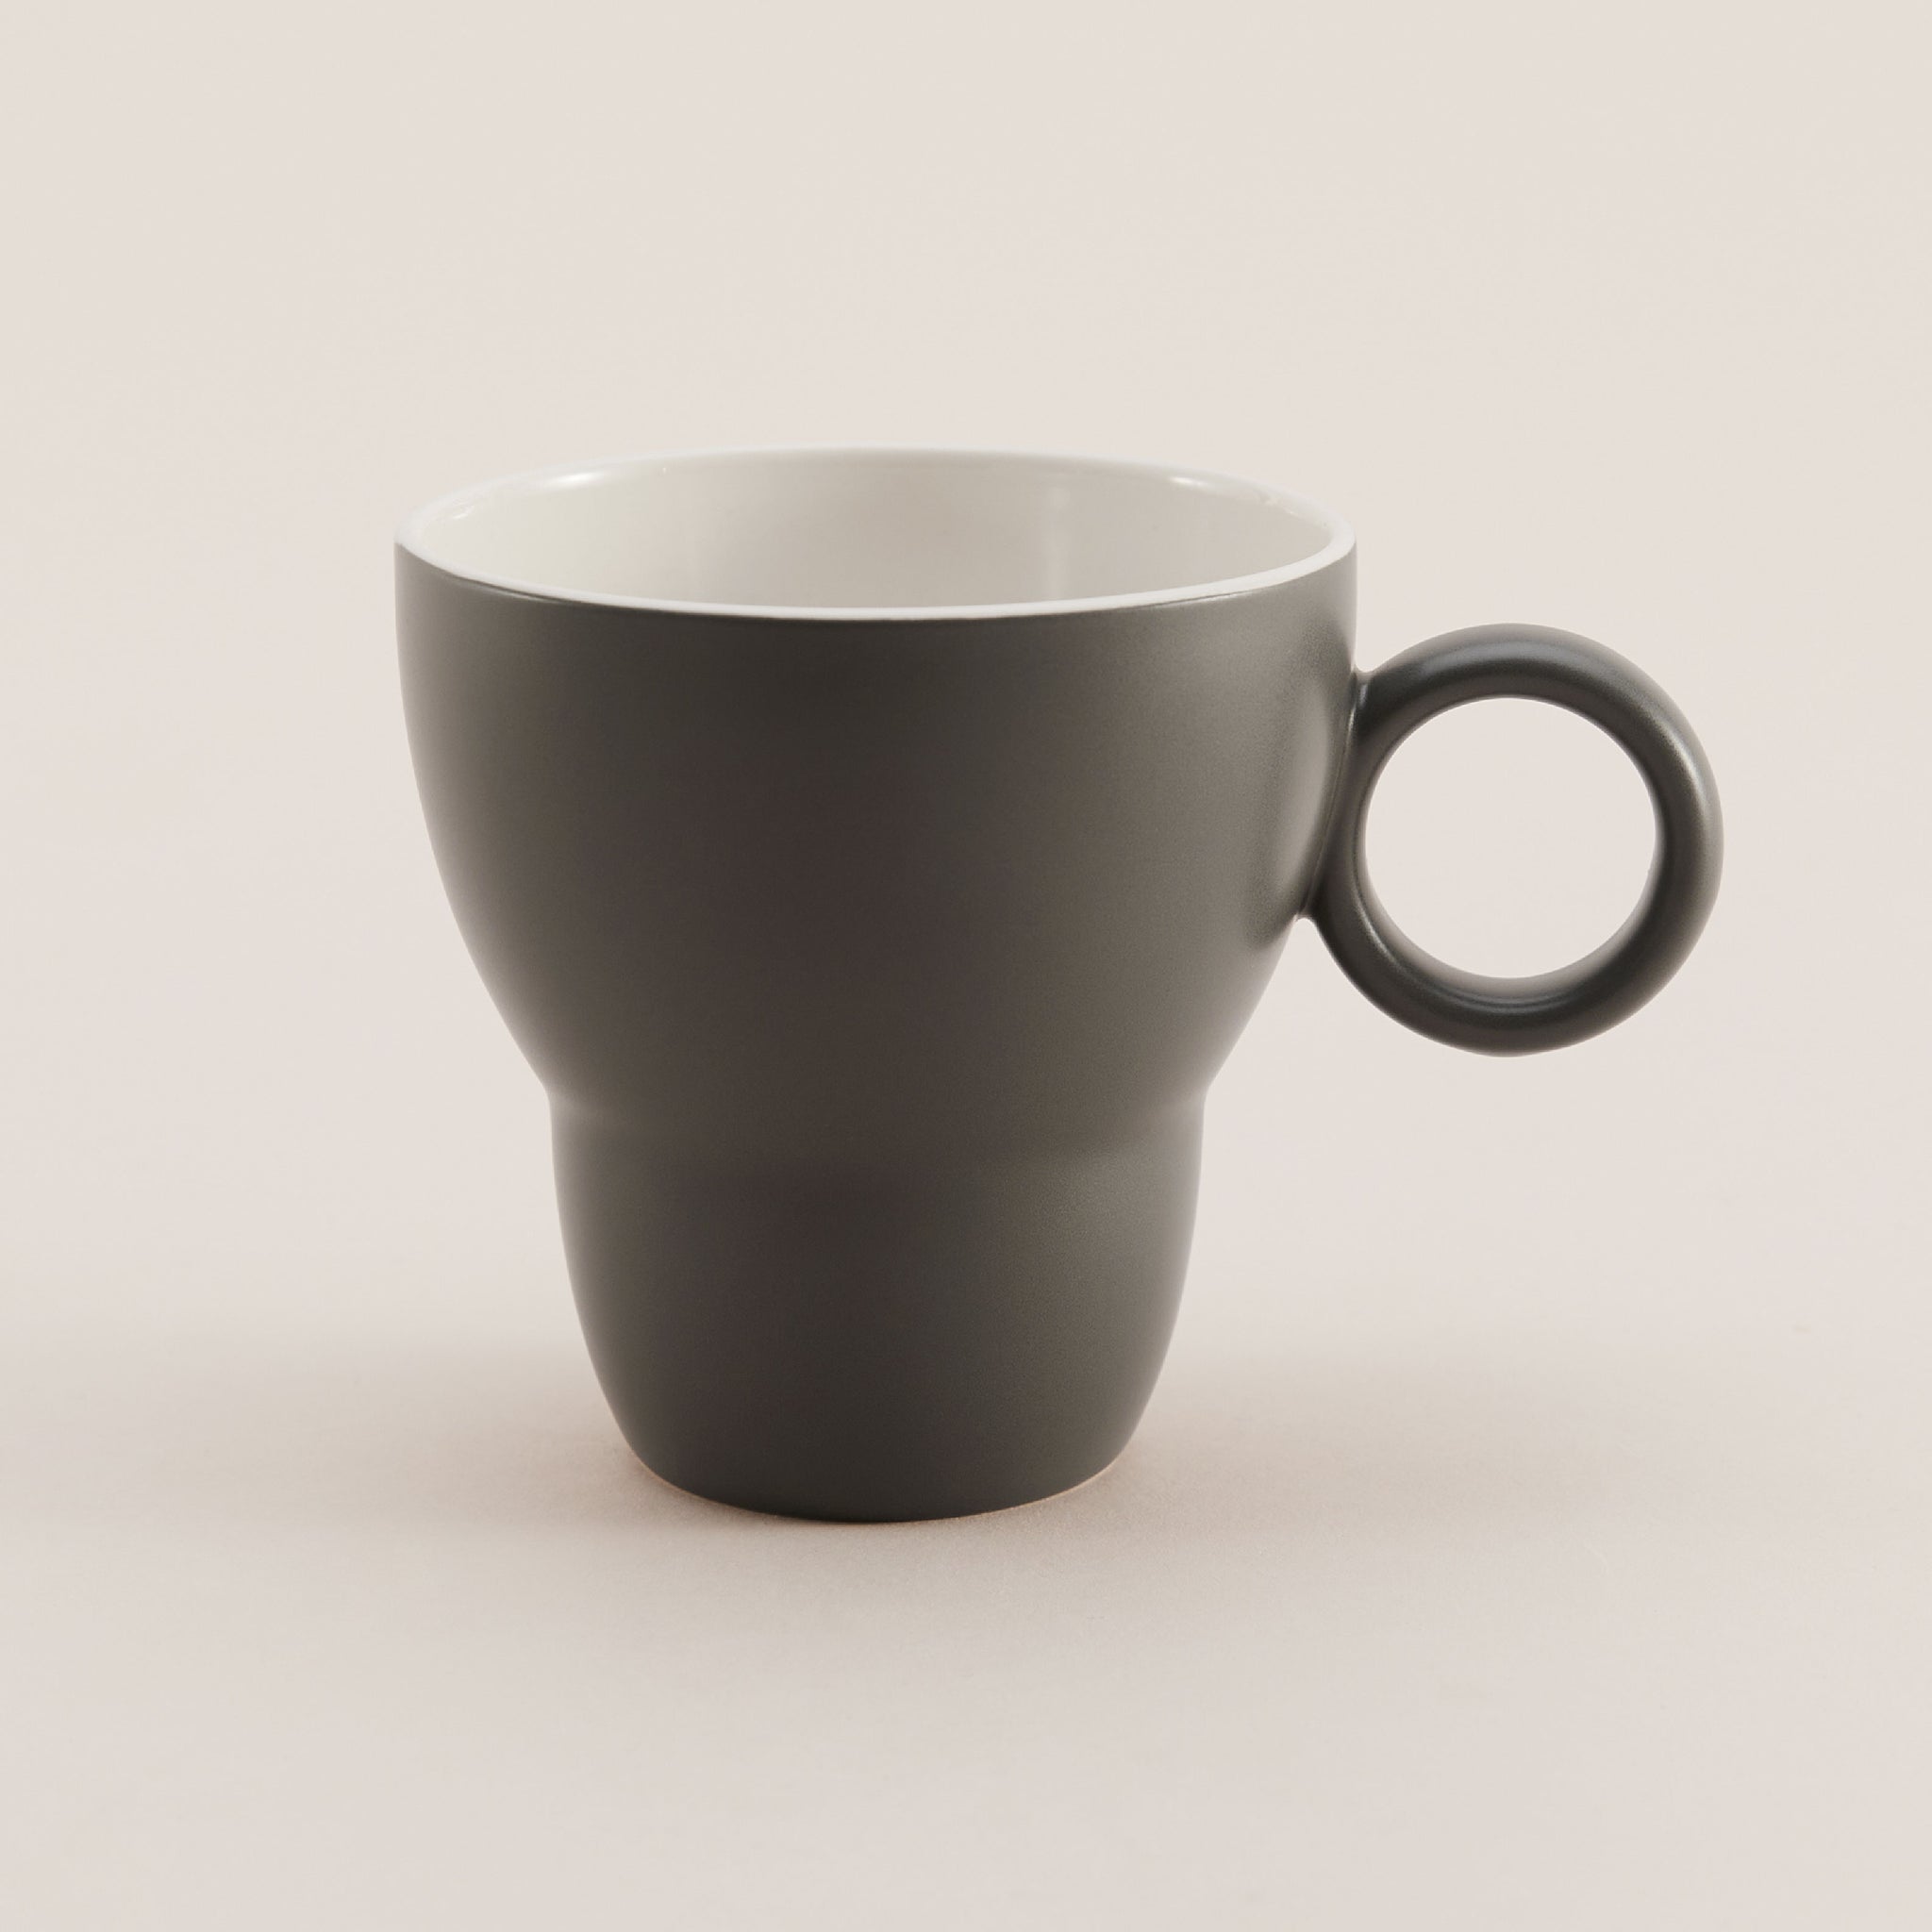 Bowlbowl Origin & Vintage Mug | แก้วมัค